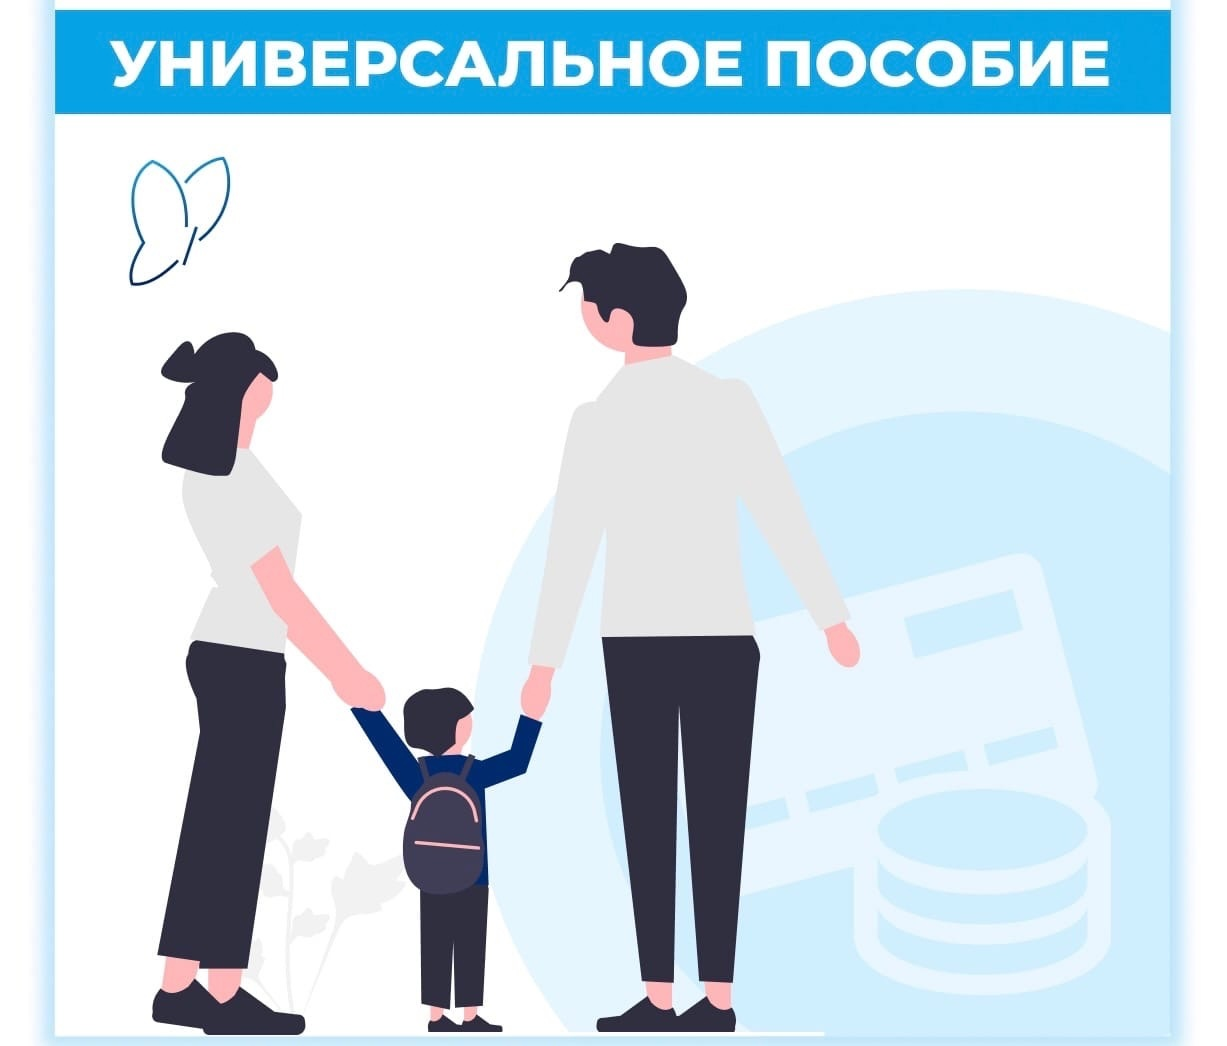 Министерство труда России с 1 января 2023 года ввело универсальное пособие для малоимущих семей с детьми.